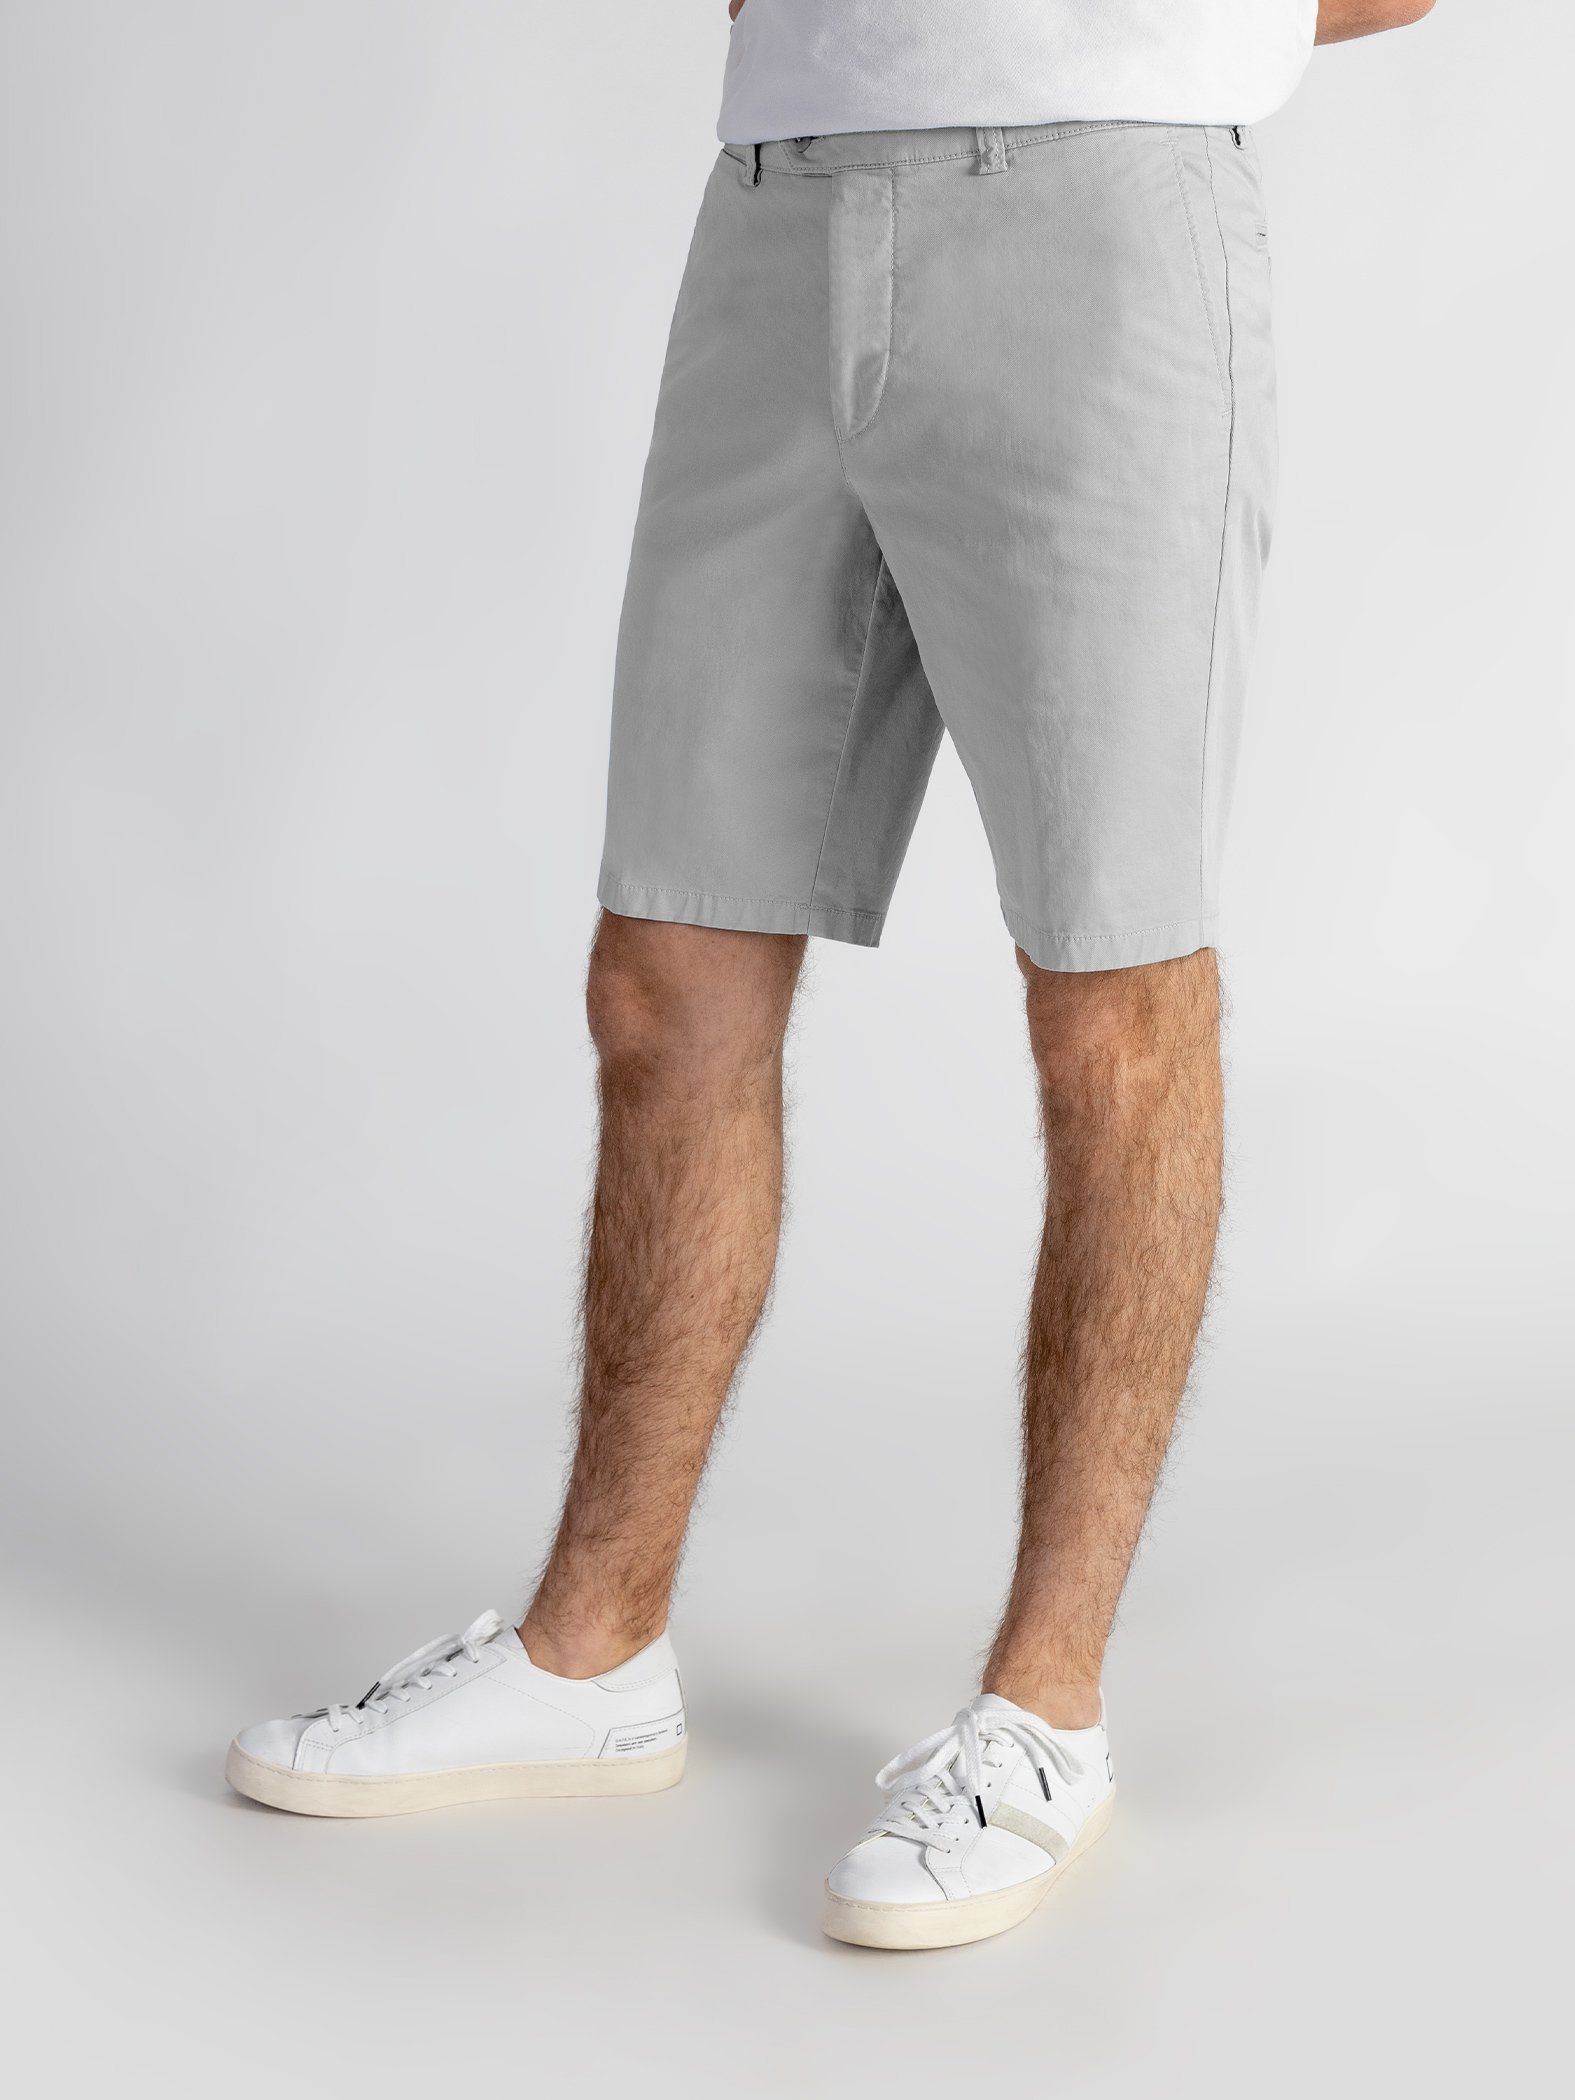 TwoMates Shorts Shorts Bund, GOTS-zertifiziert hellgrau Farbauswahl, elastischem mit